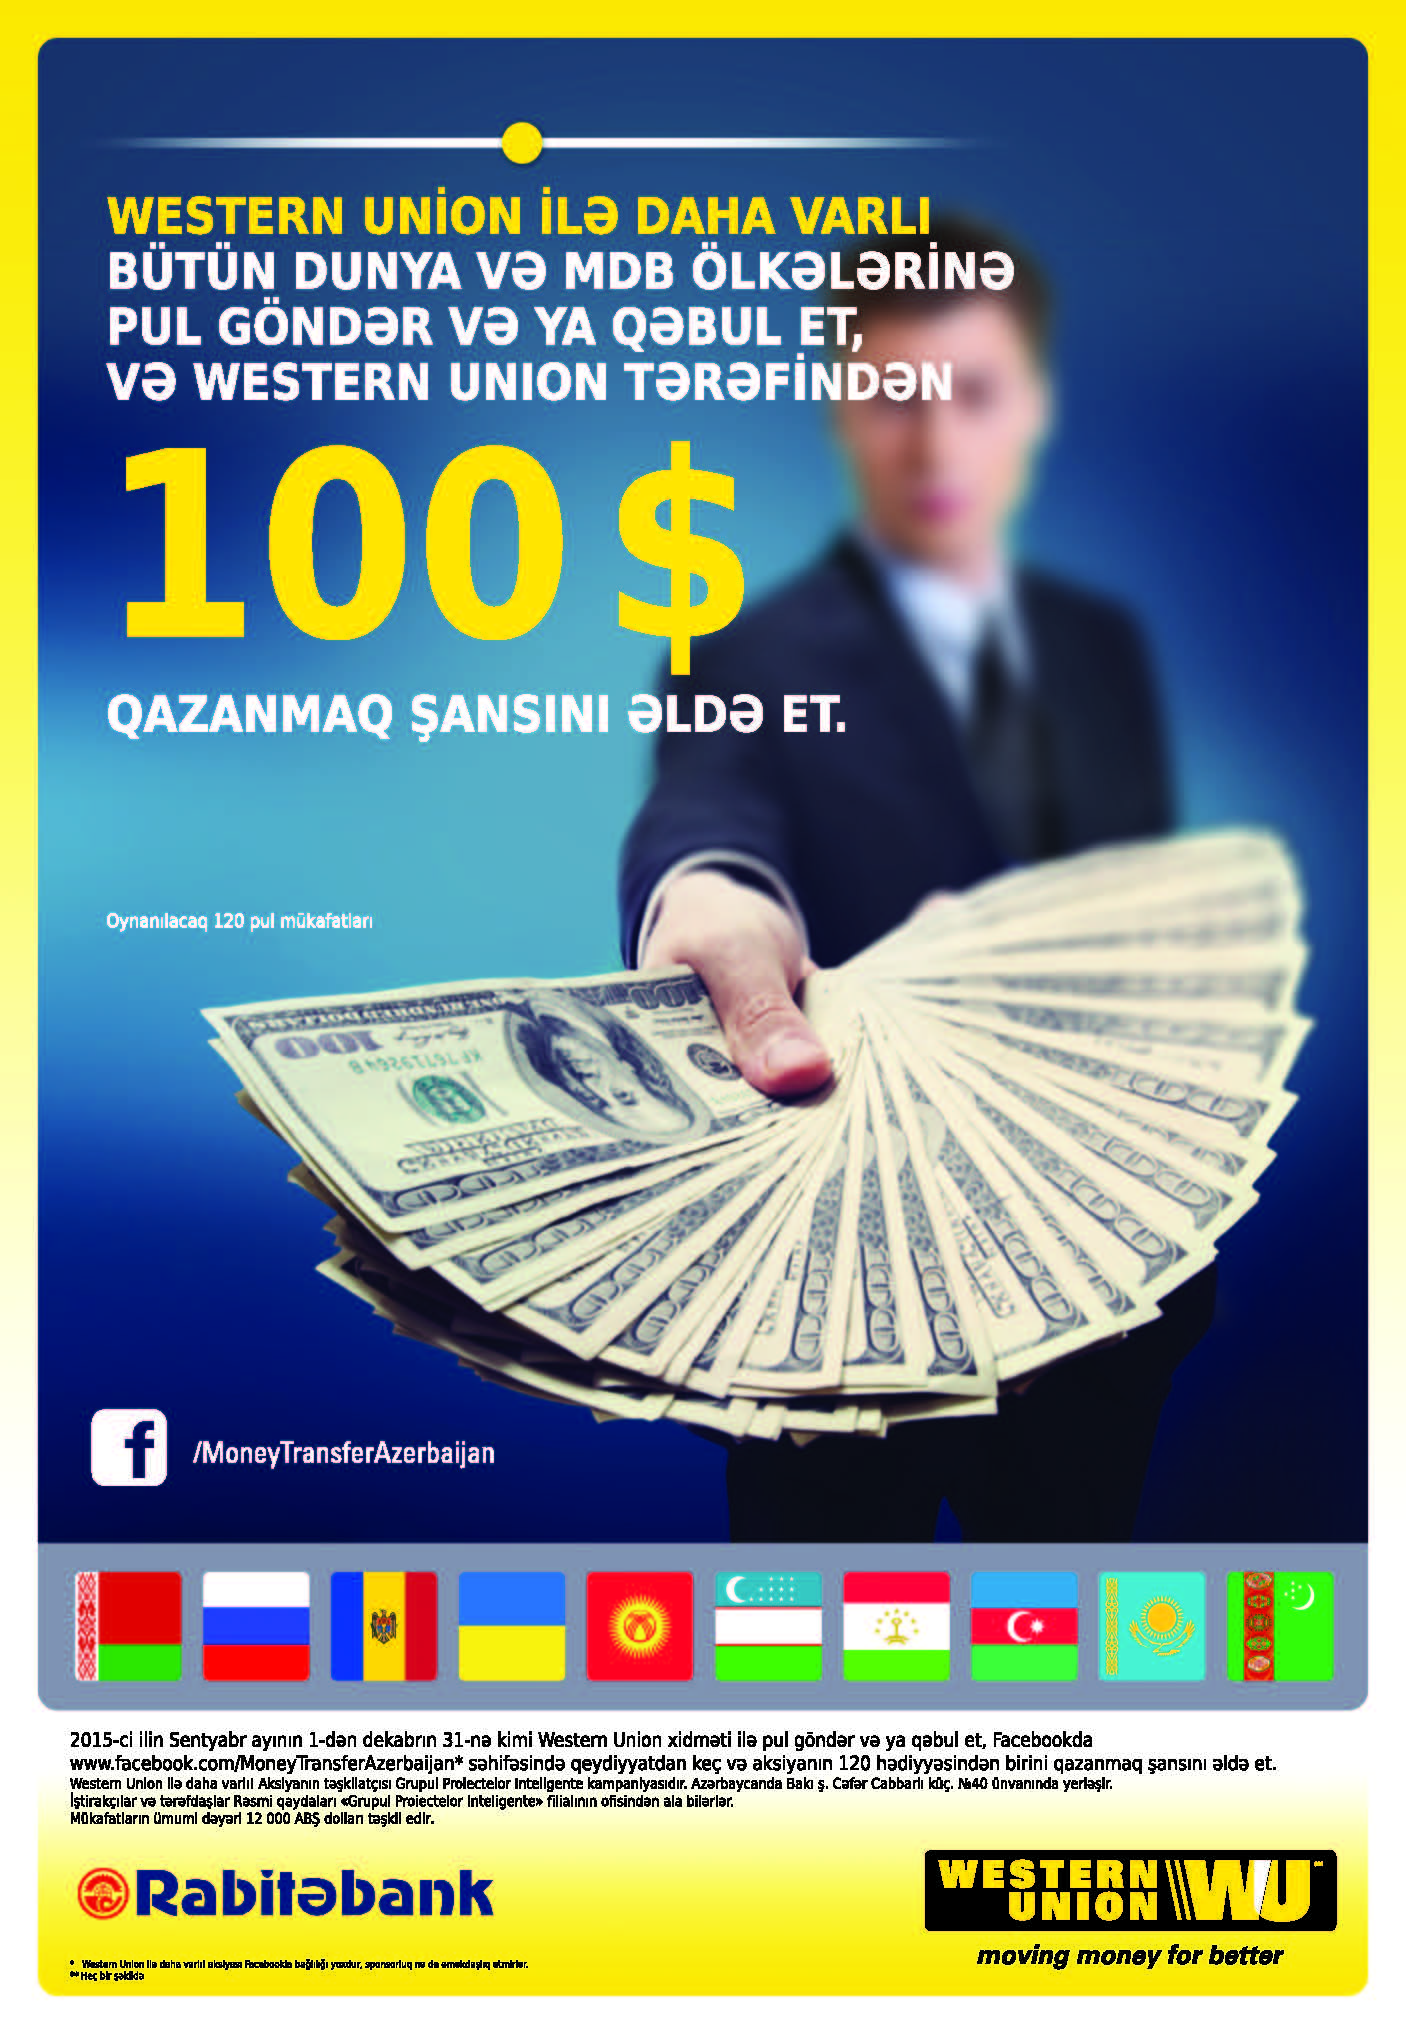 Переводите денег с Western Union в отделениях Rabitabank-a и выиграйте $ 100!